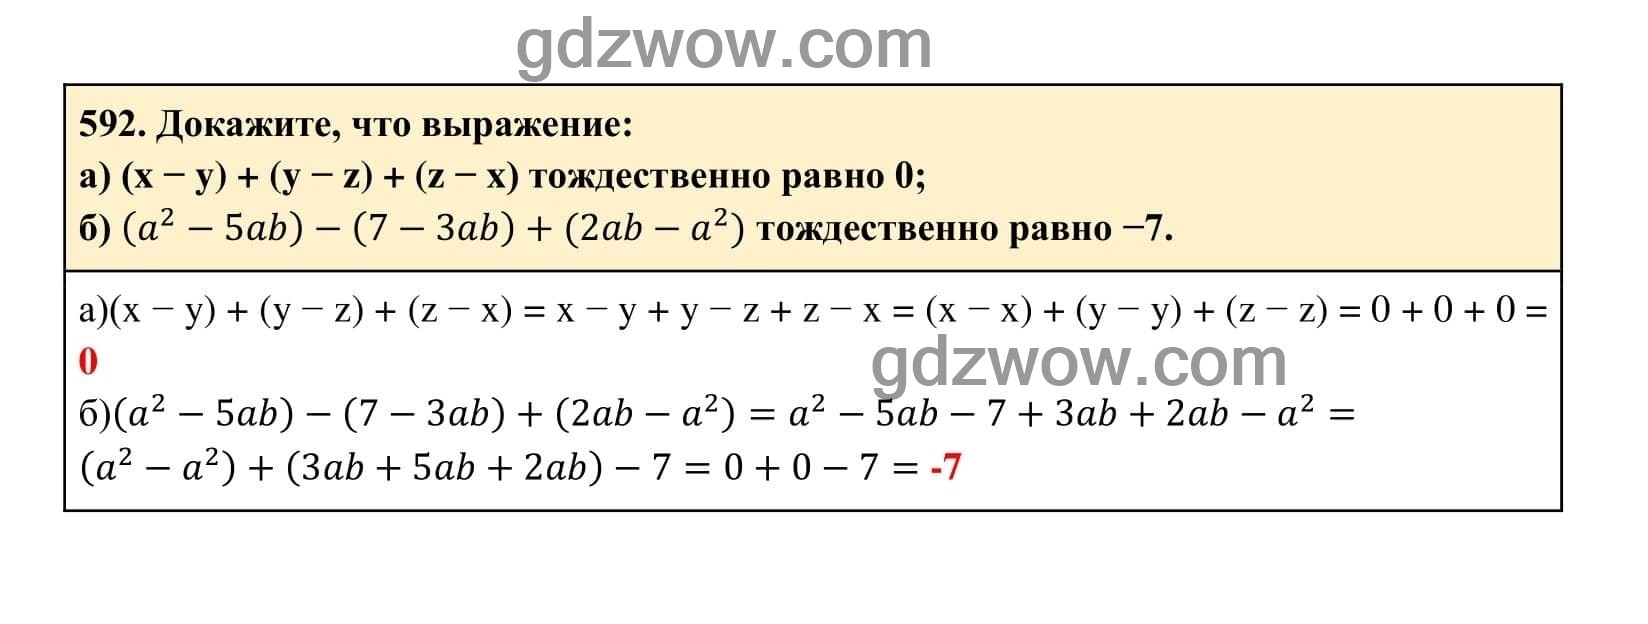 Упражнение 592 - ГДЗ по Алгебре 7 класс Учебник Макарычев (решебник) - GDZwow